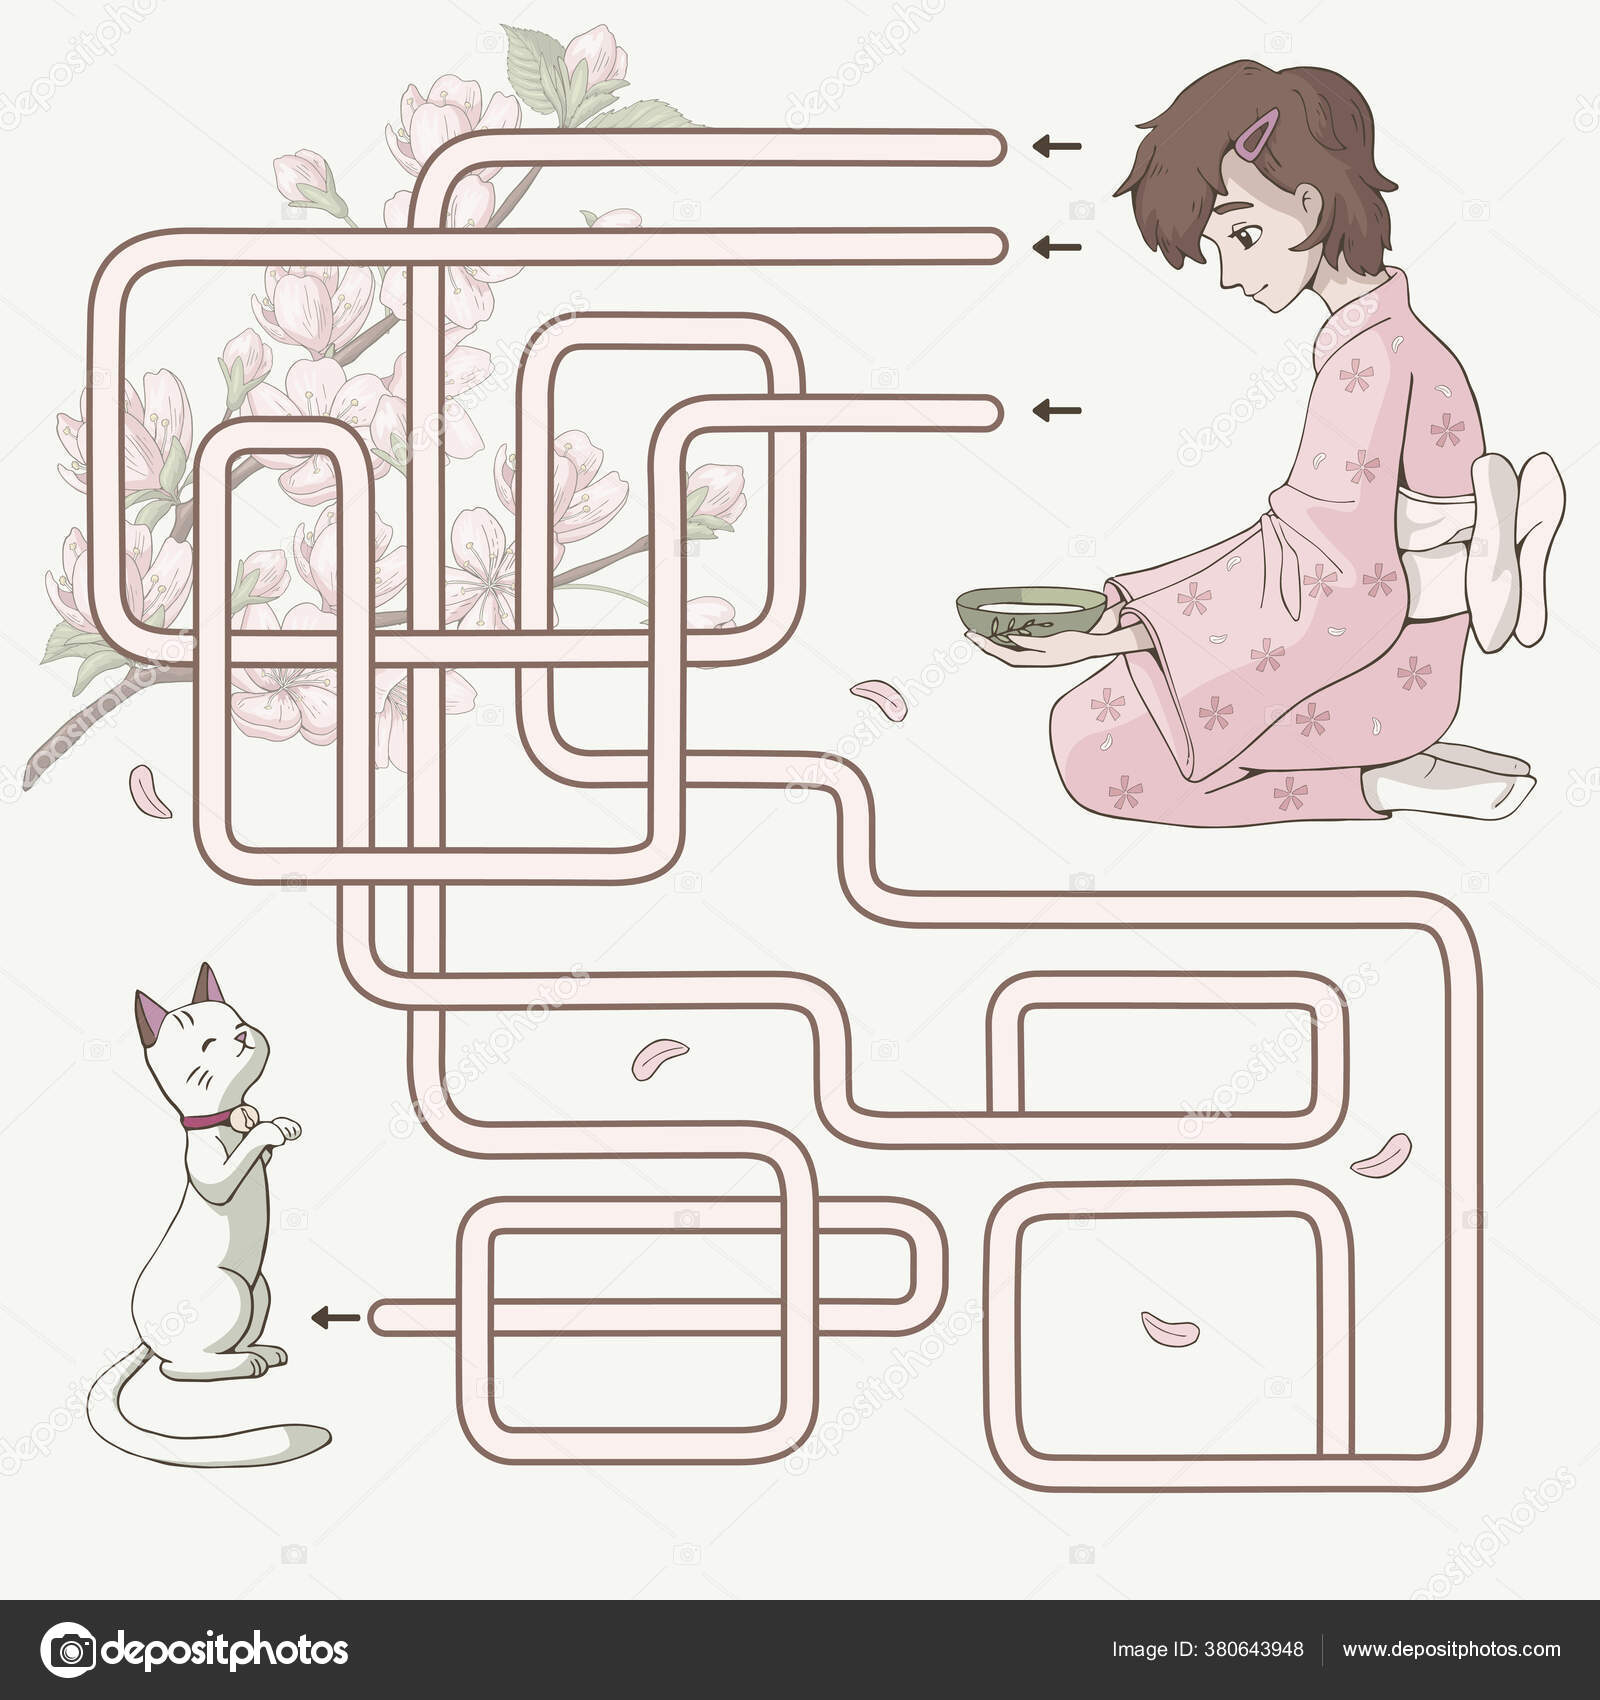 Jogo de labirinto para crianças com menina e menino